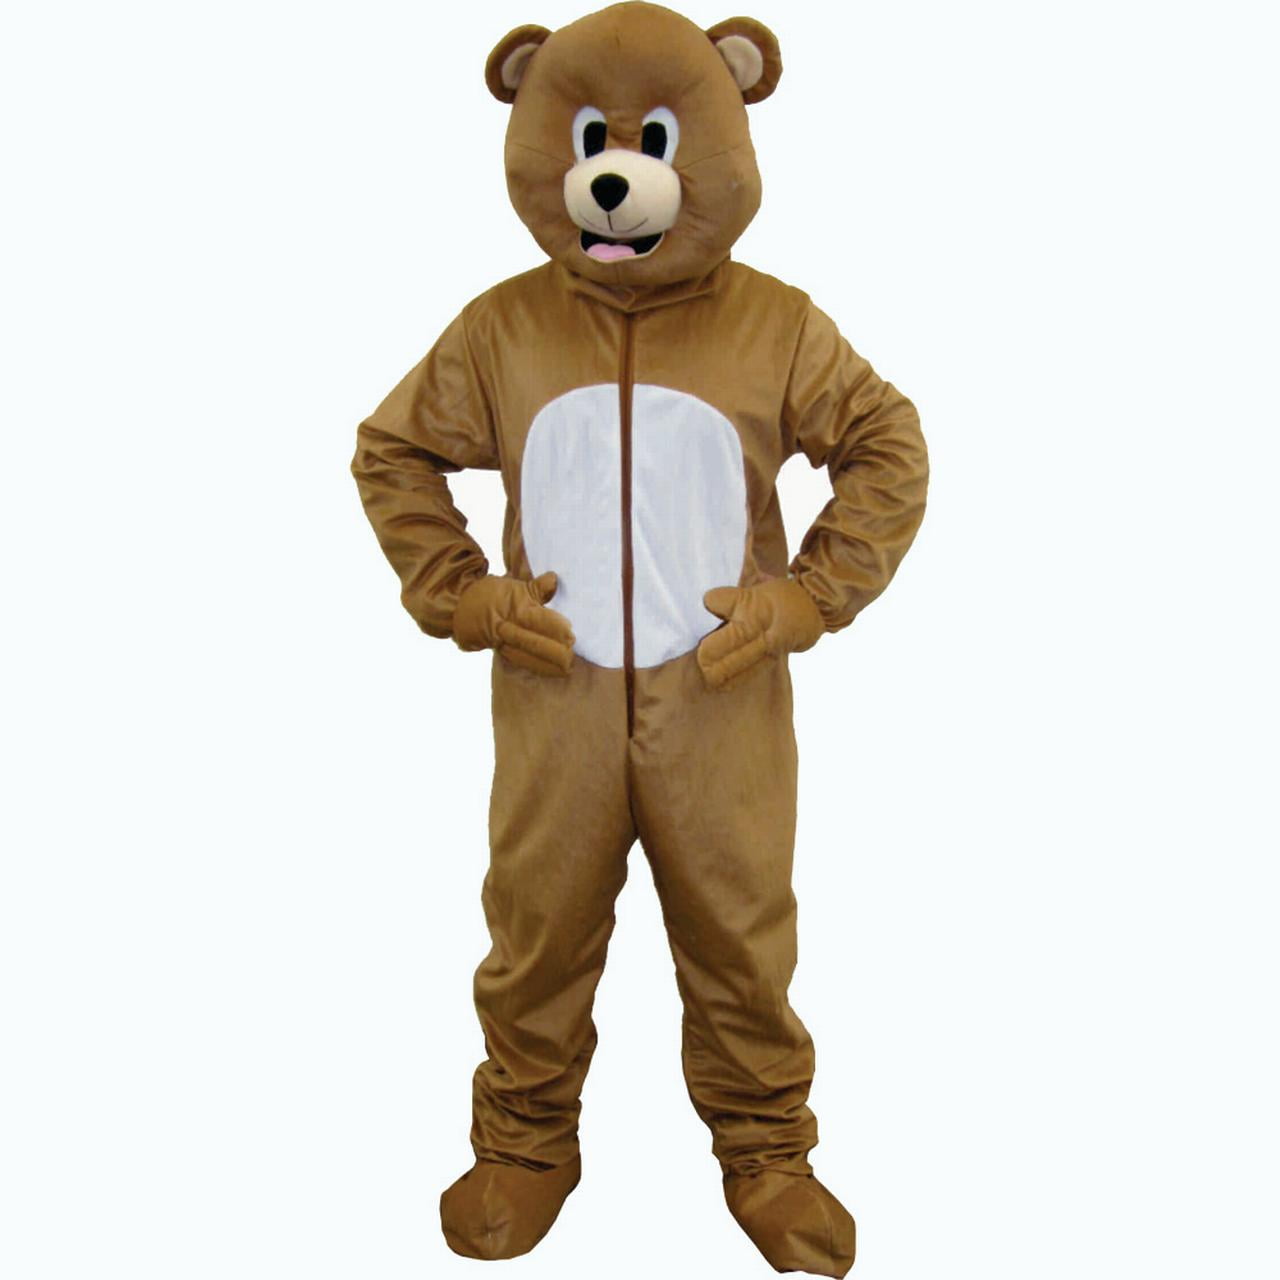 dress up teddy bear